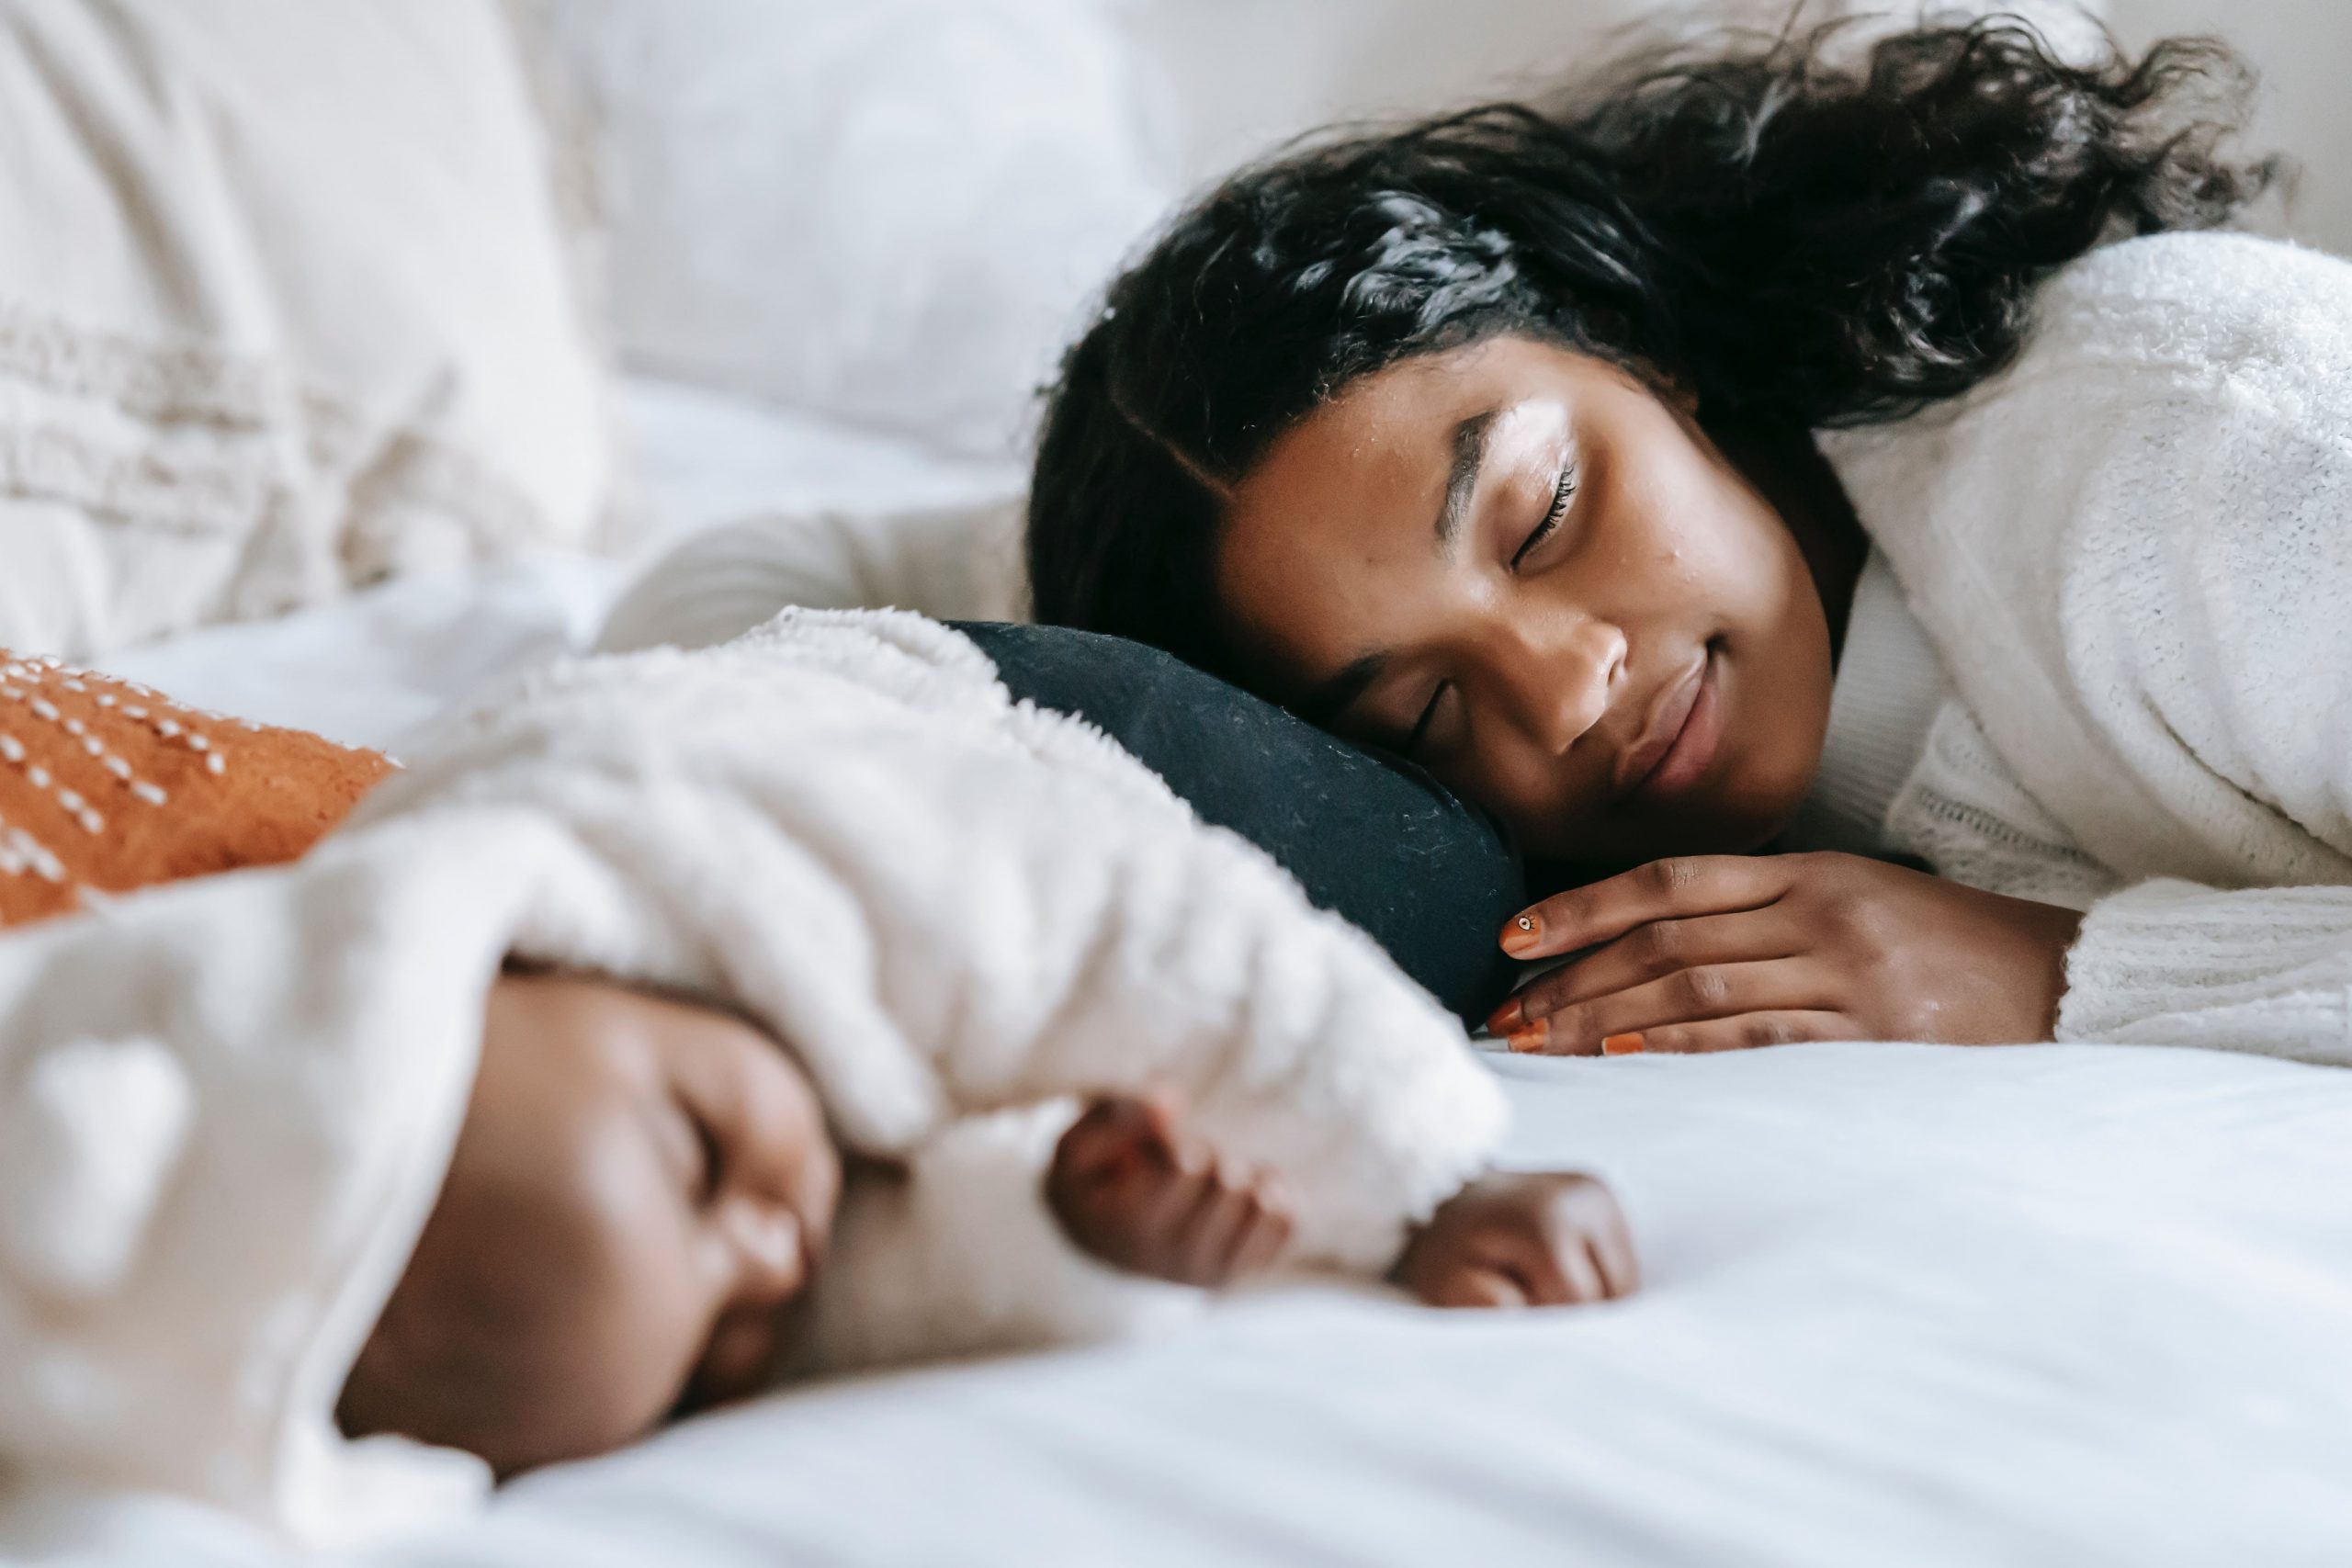 ein Bild, das eine glückliche Mutter und ein fest schlafendes Baby zeigt, ist ein Gefühl, das therapinum vermitteln möchte